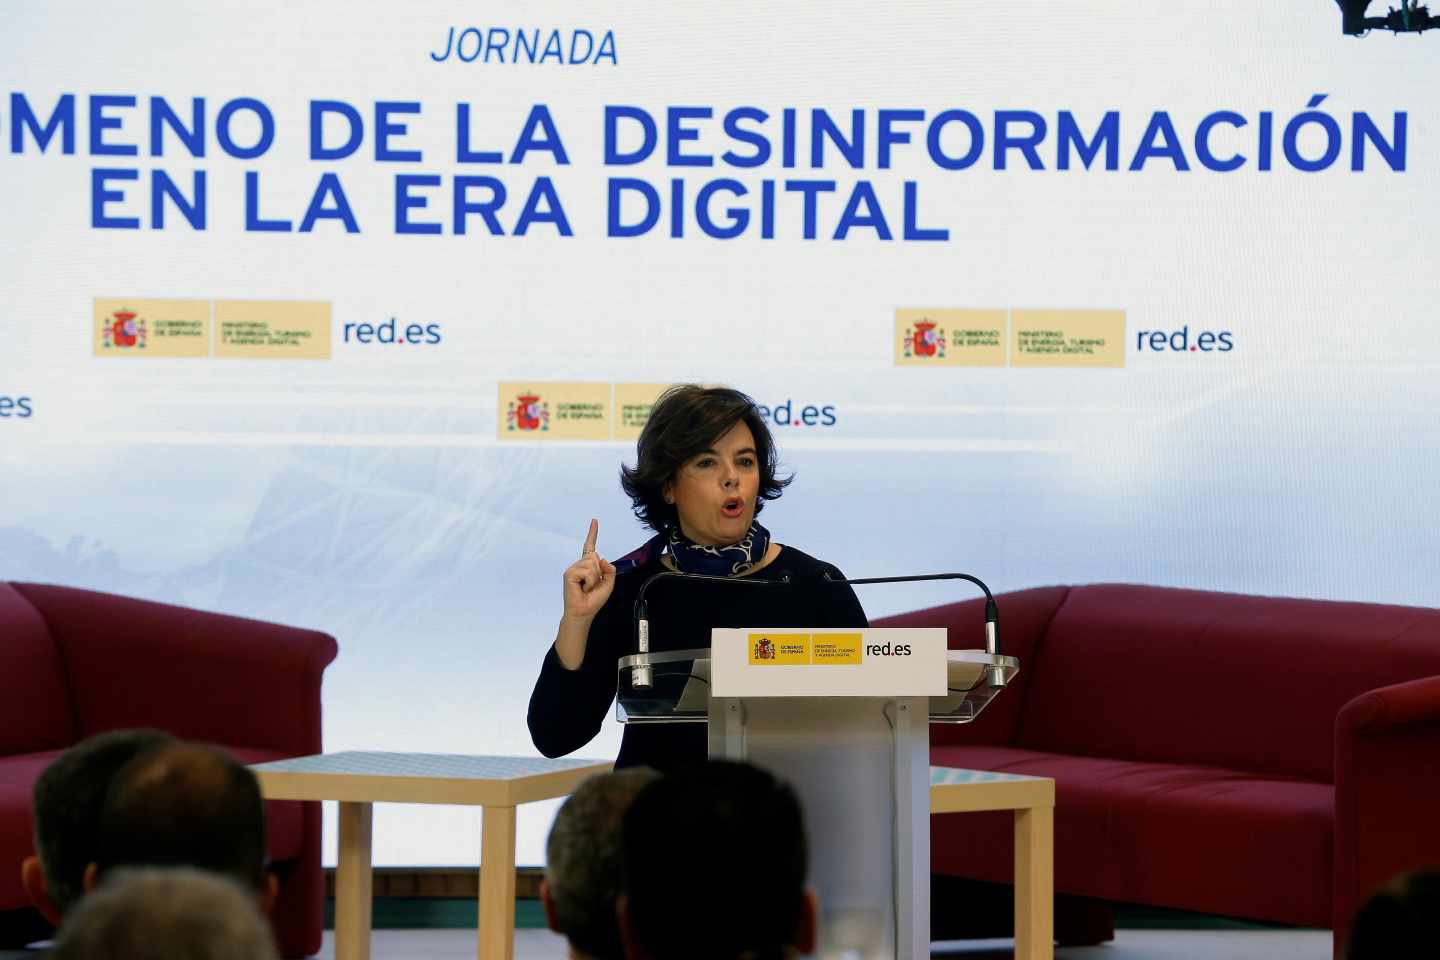 La vicepresidenta del Gobierno, Soraya Sáenz de Santamaría, durante su intervención sobre las noticias falsas en España.